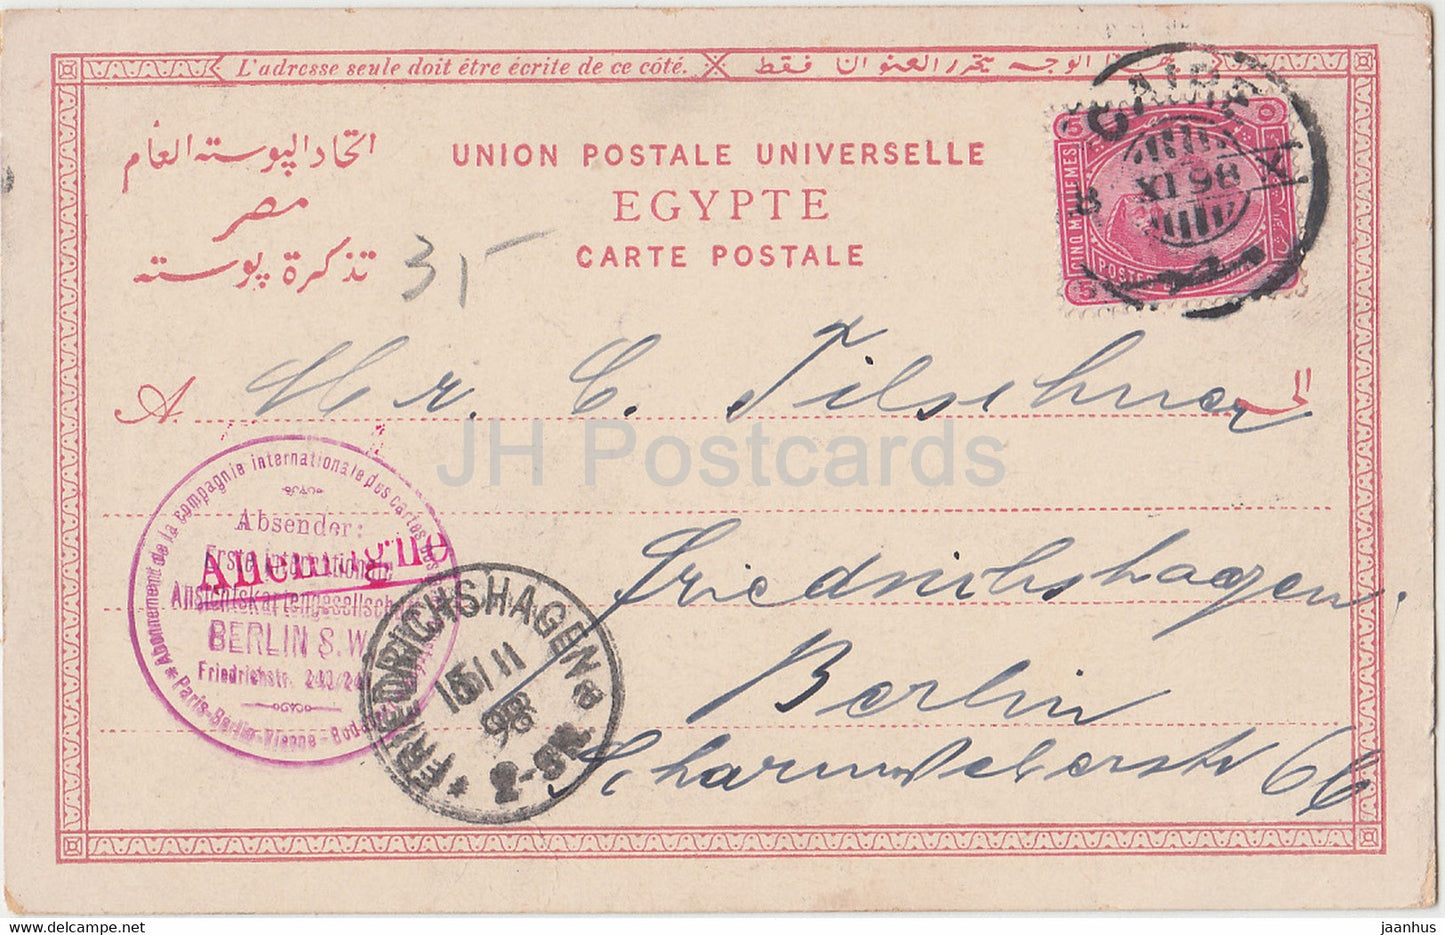 Kairo - Ansicht - Von des gelben Wüstensandes Gluthen - Mirza Schaffy - alte Postkarte - 1898 - Ägypten - gebraucht